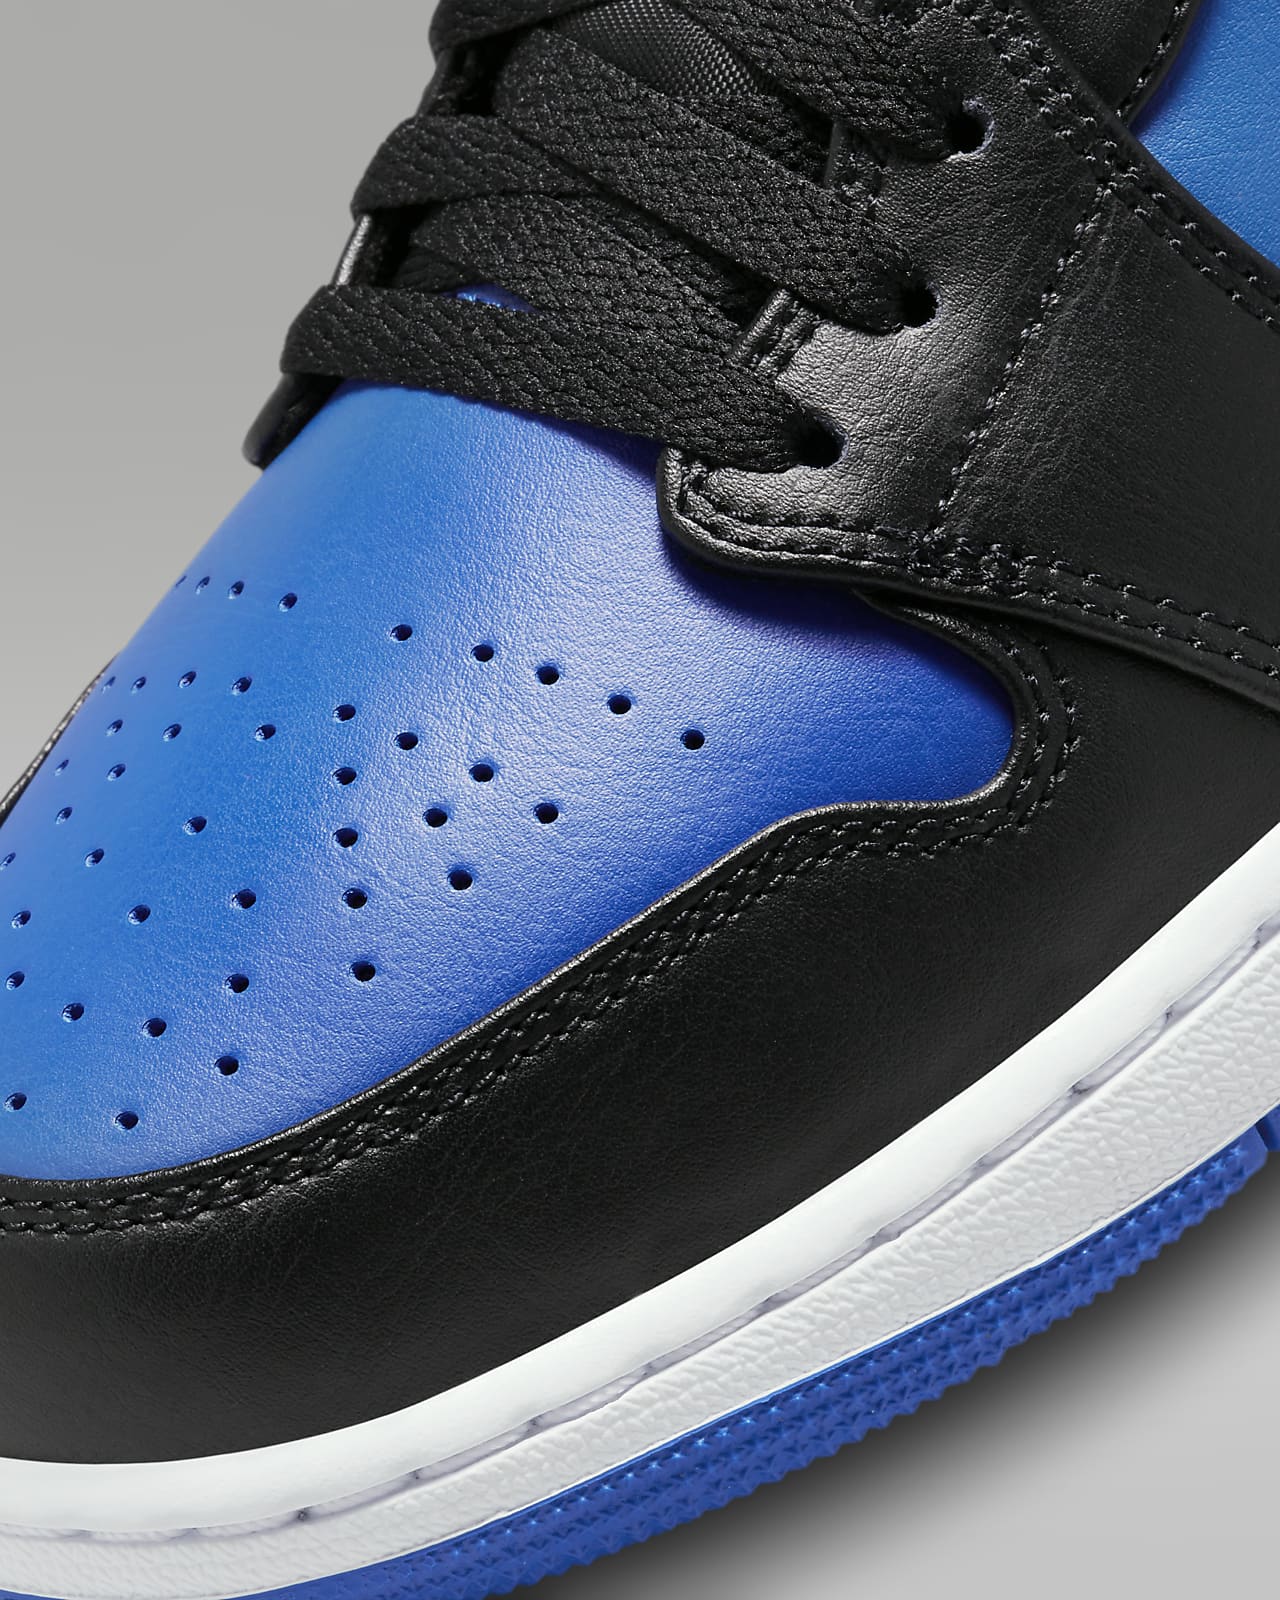 New Jordan Shoes. Nike IN